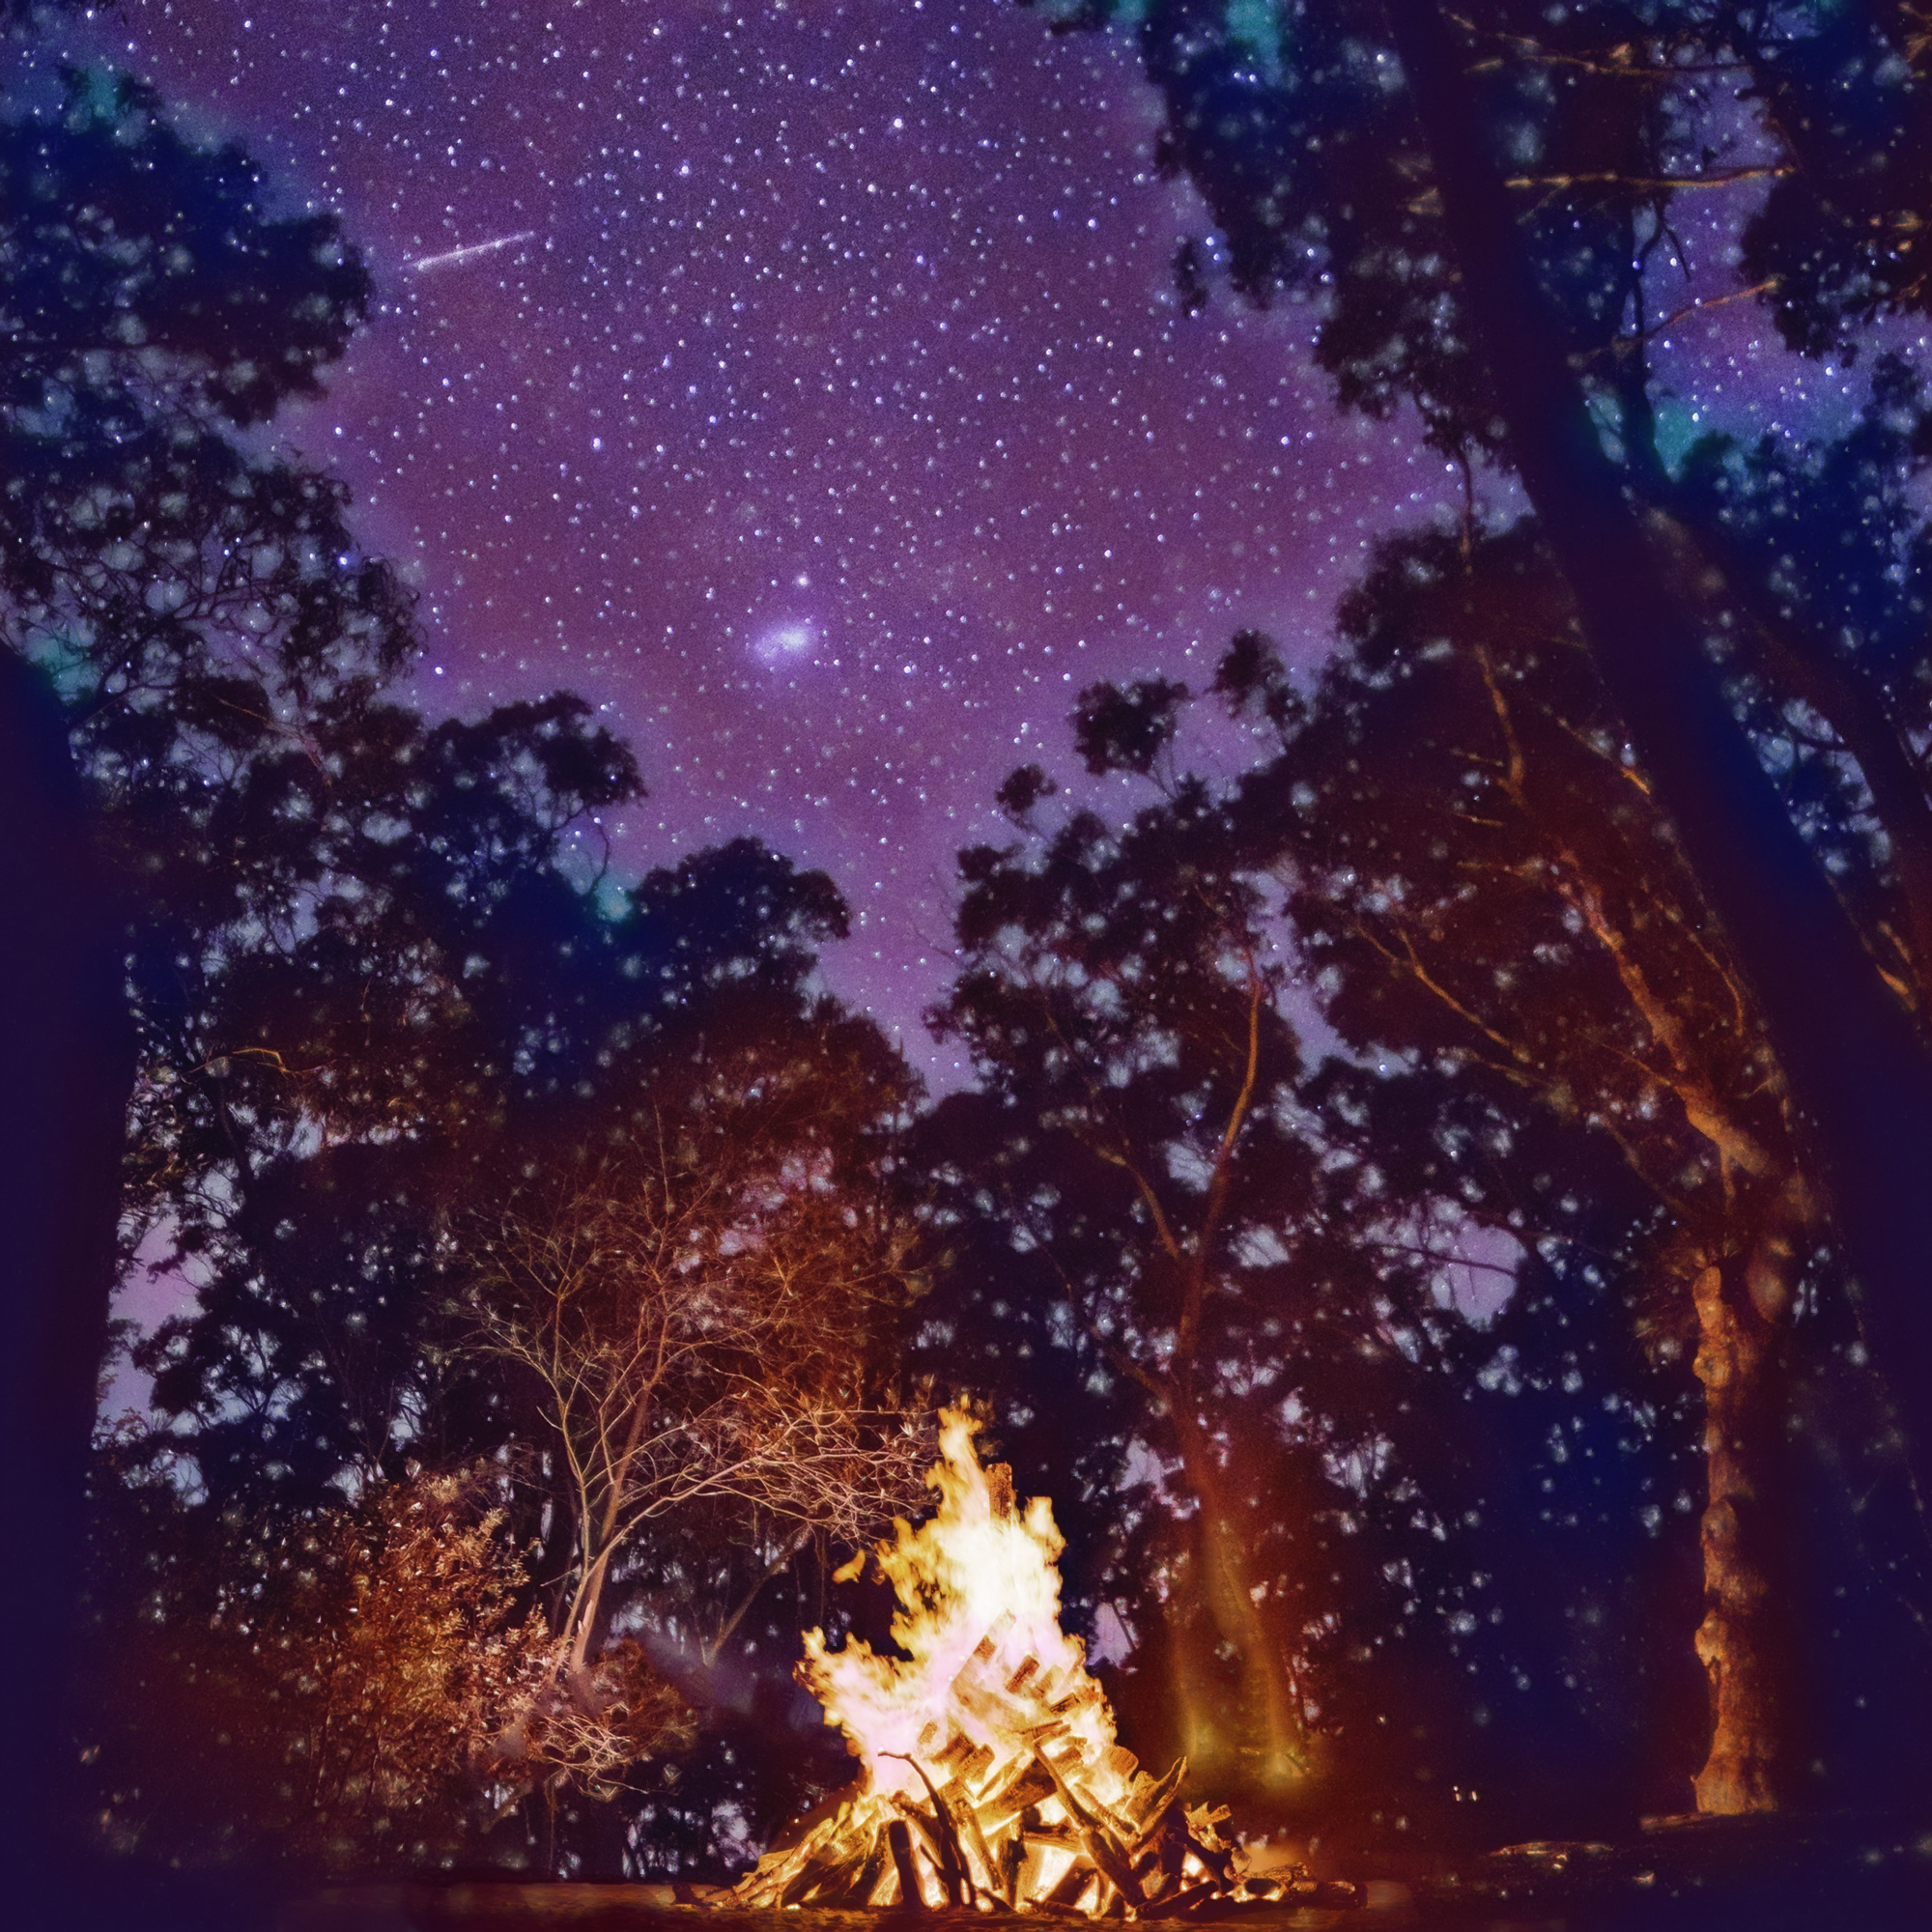 綺麗な夜空と燃える炎のキャンプファイヤーと輝く星々：グラデーション